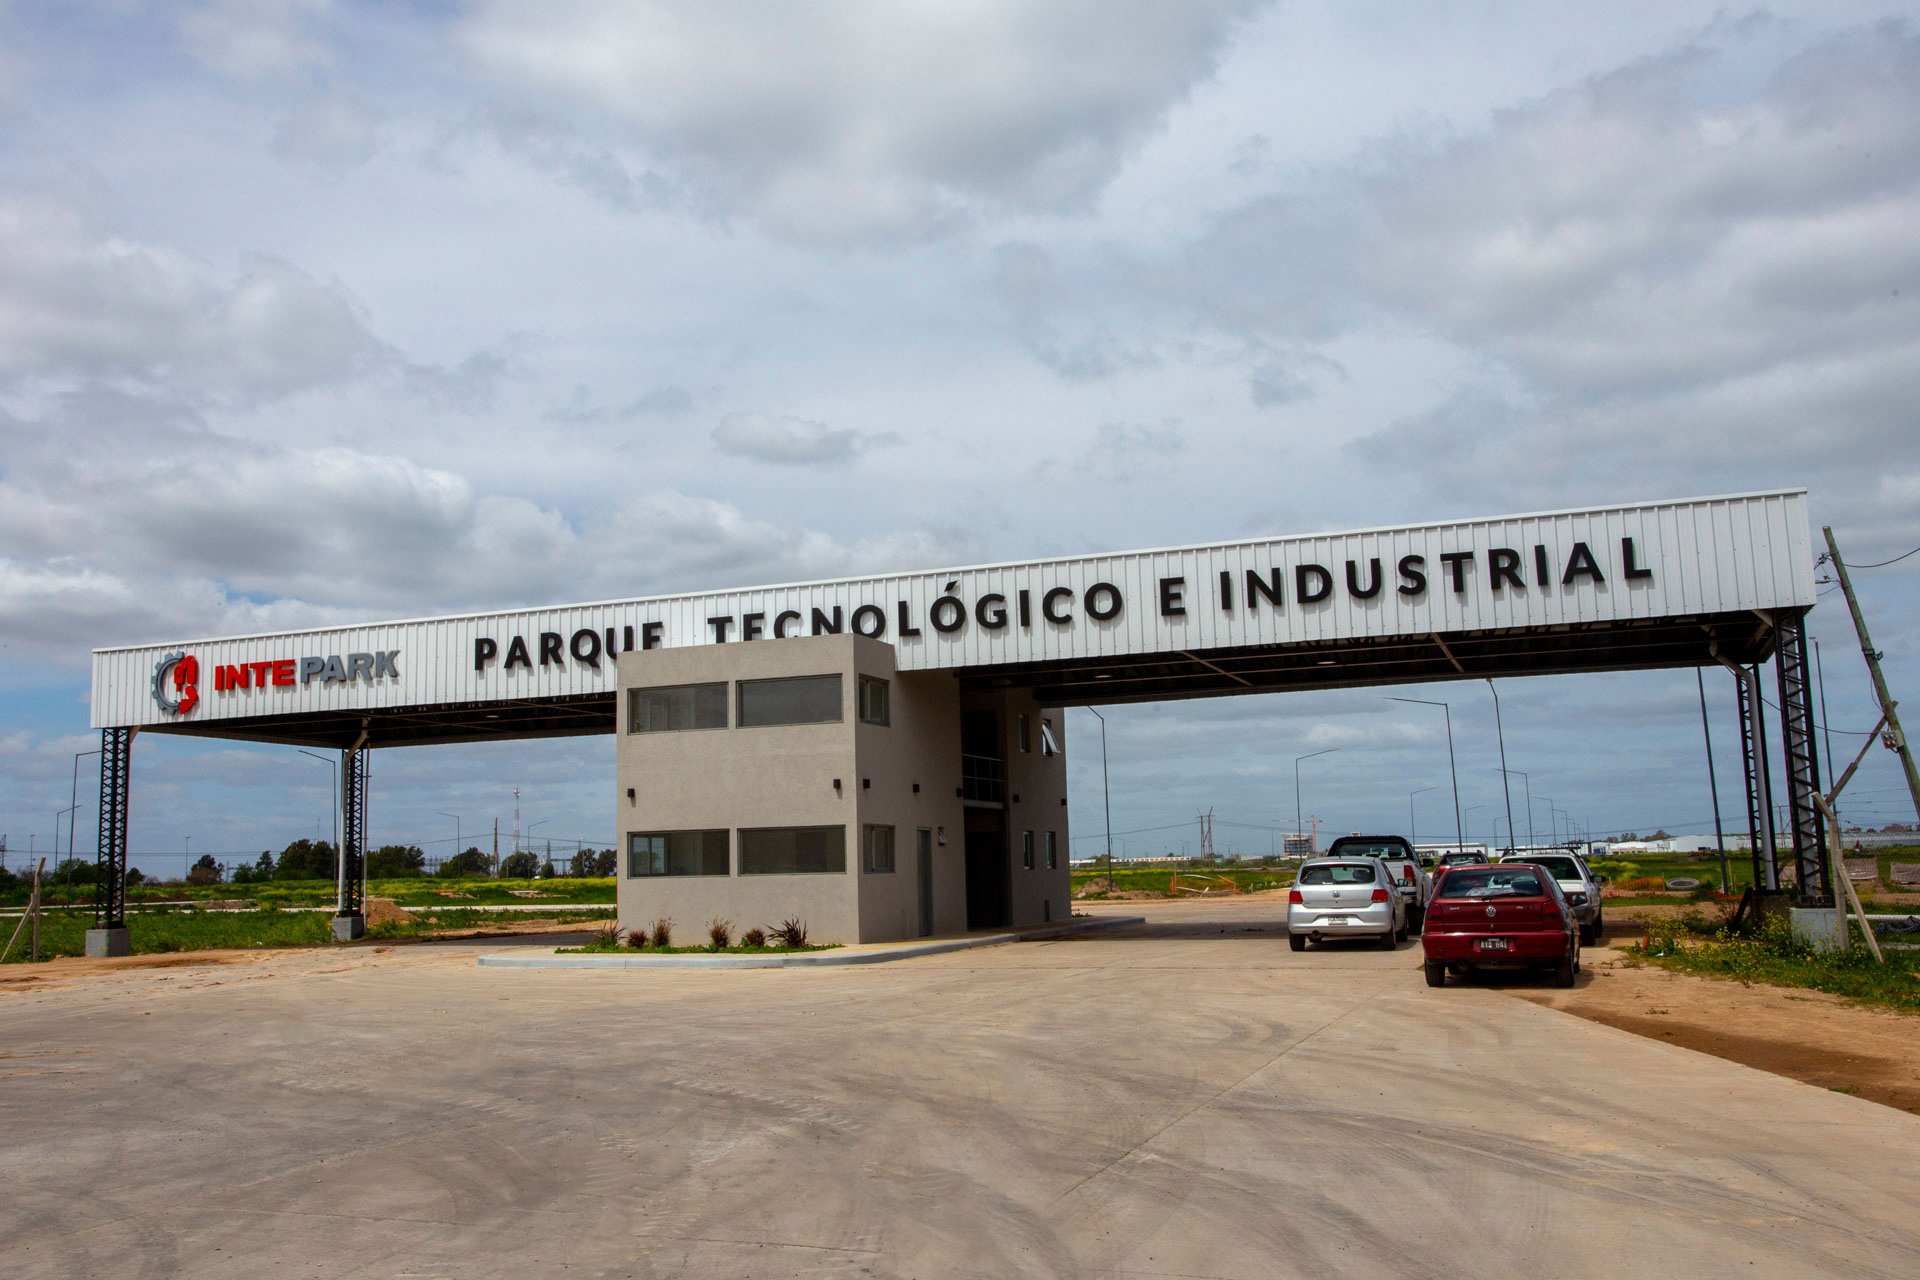 Avanza el desarrollo del Parque Tecnológico Industrial Intepark